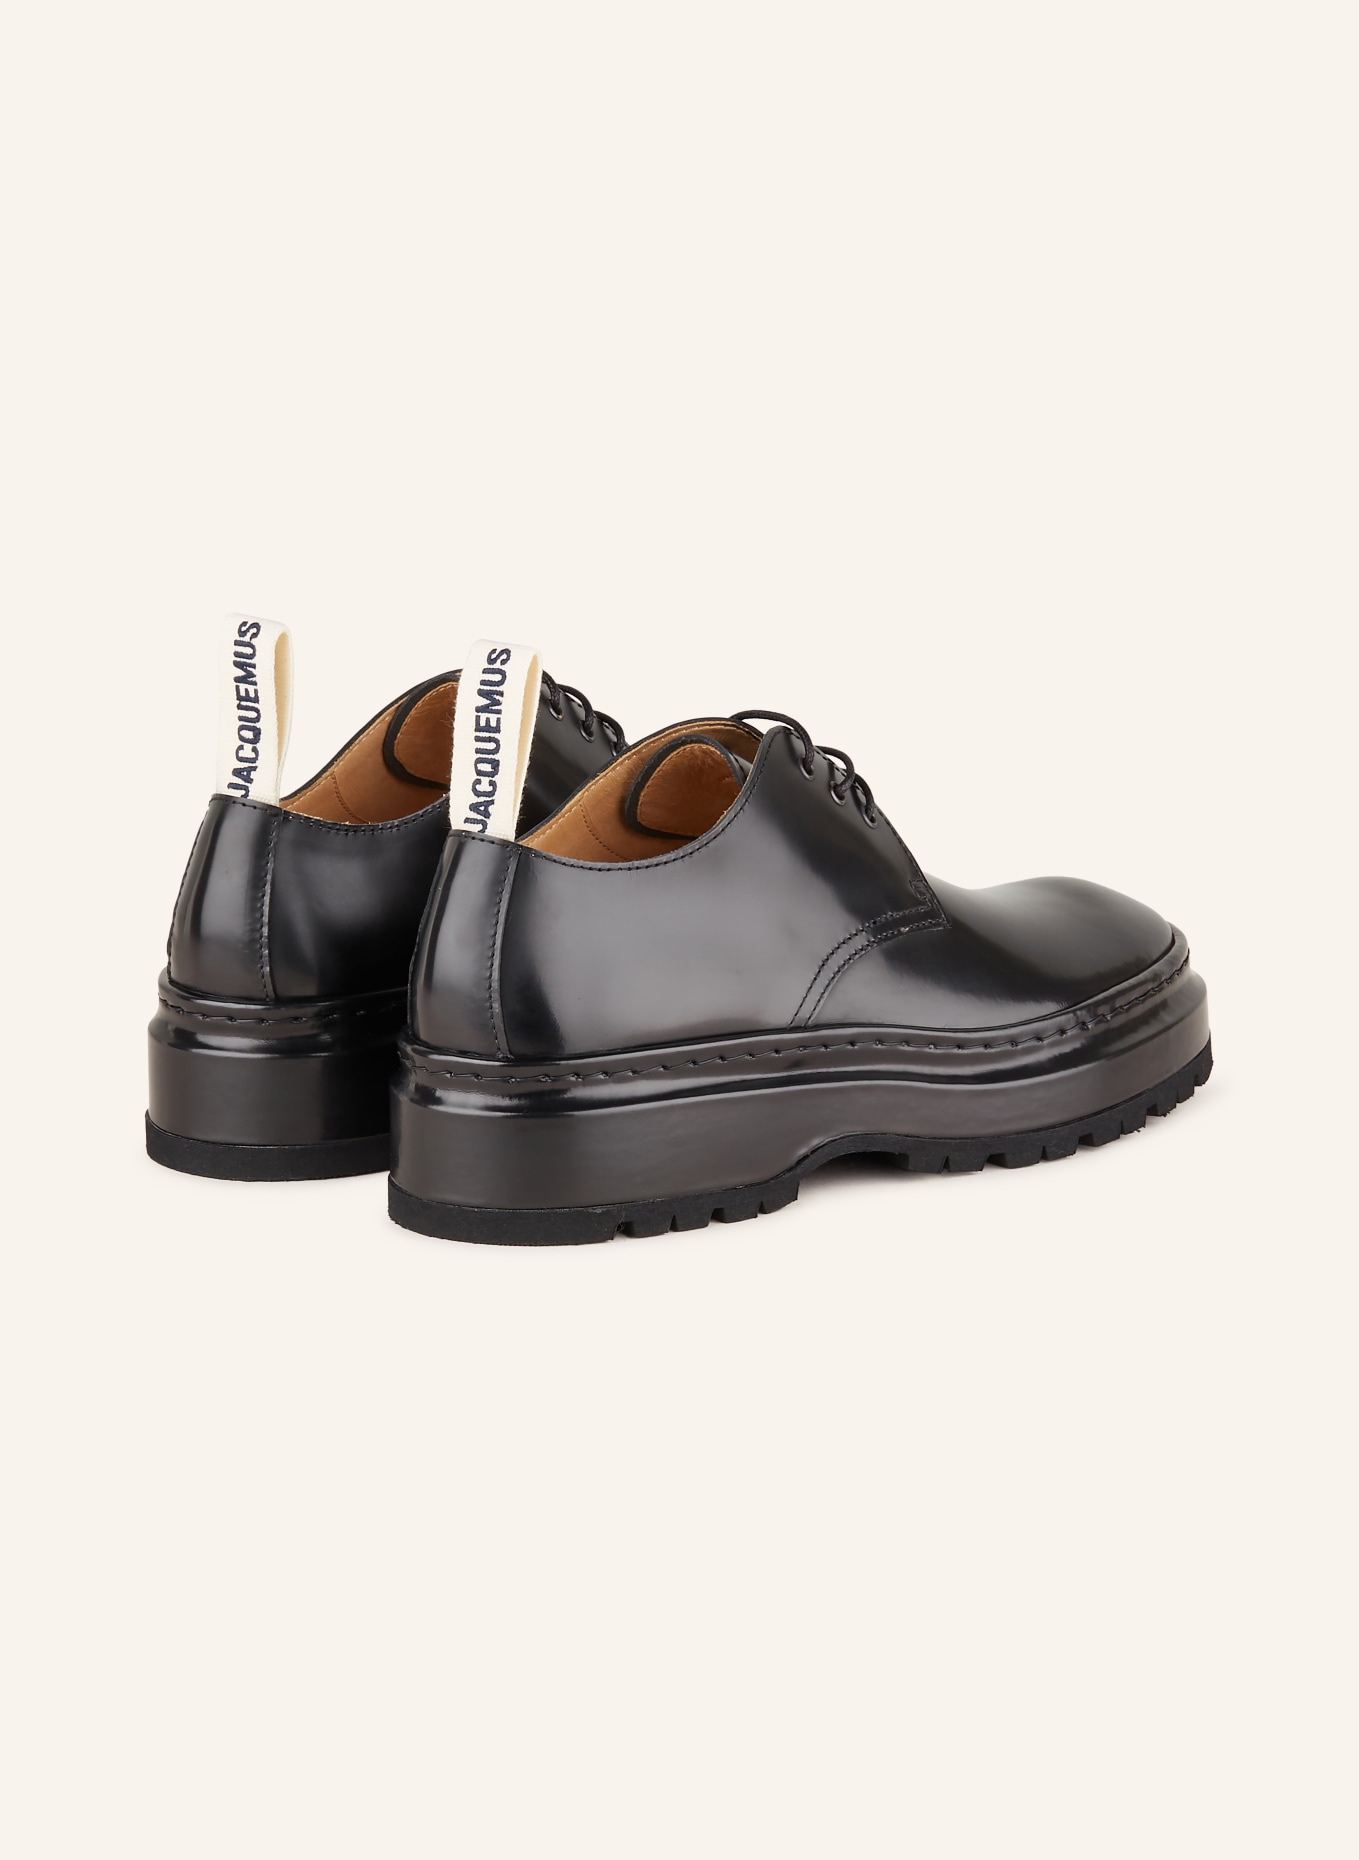 Jacquemus Les Derbies Pavane leather shoes - Black